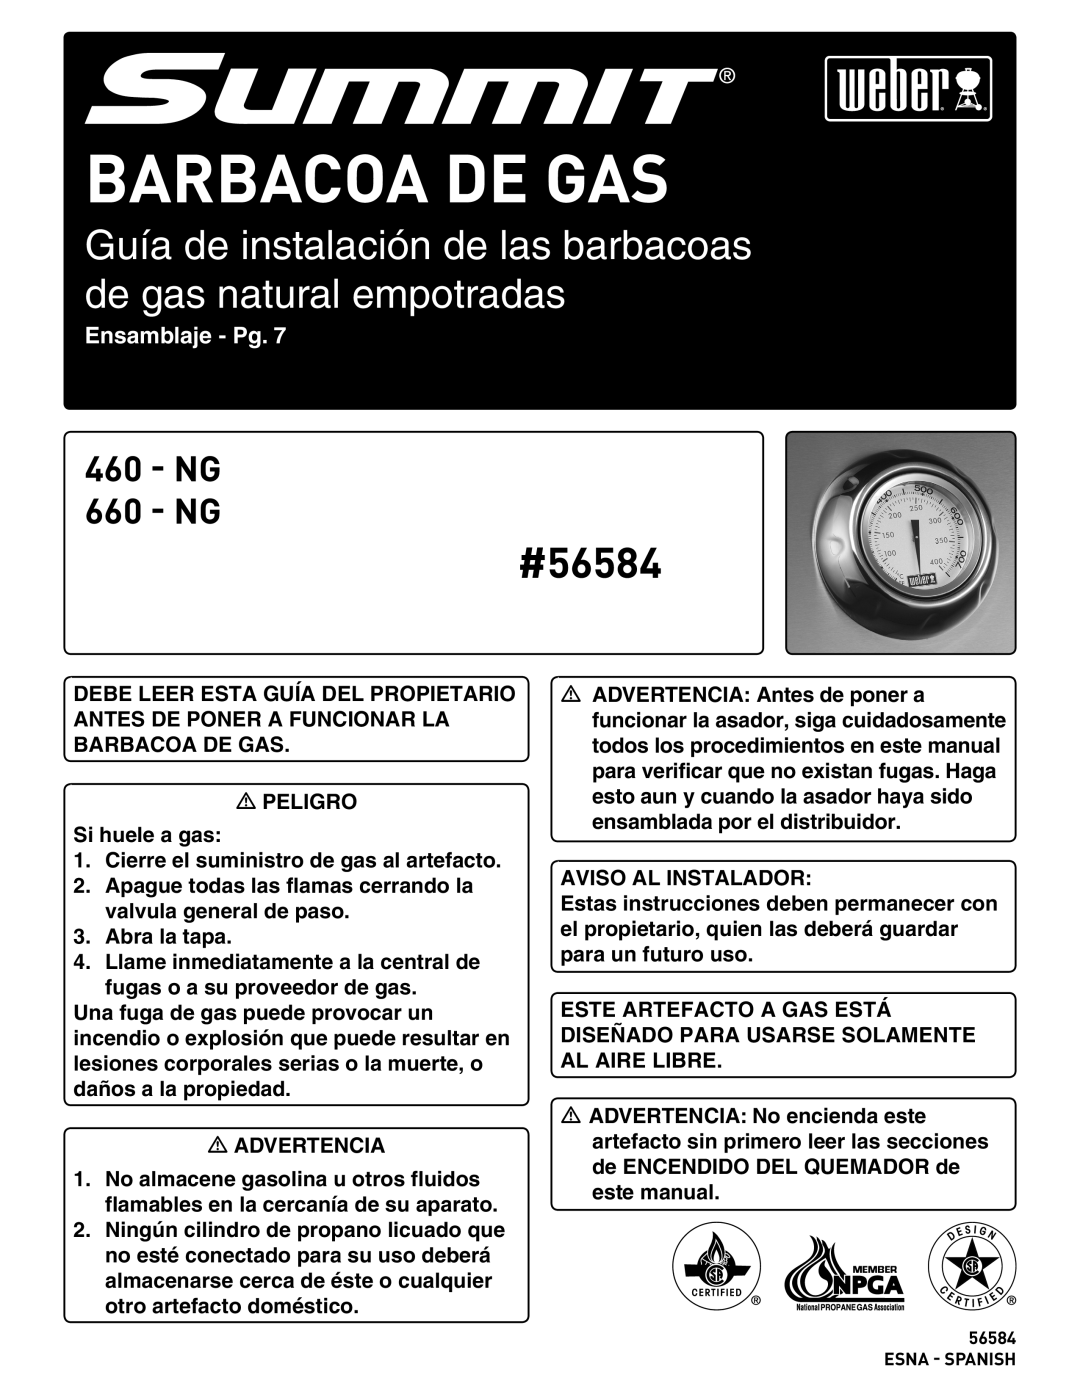 Weber 56576 manual Barbacoa de Gas, Guía de instalación de las barbacoas de gas natural empotradas, Ensamblaje - Pg, #56584 